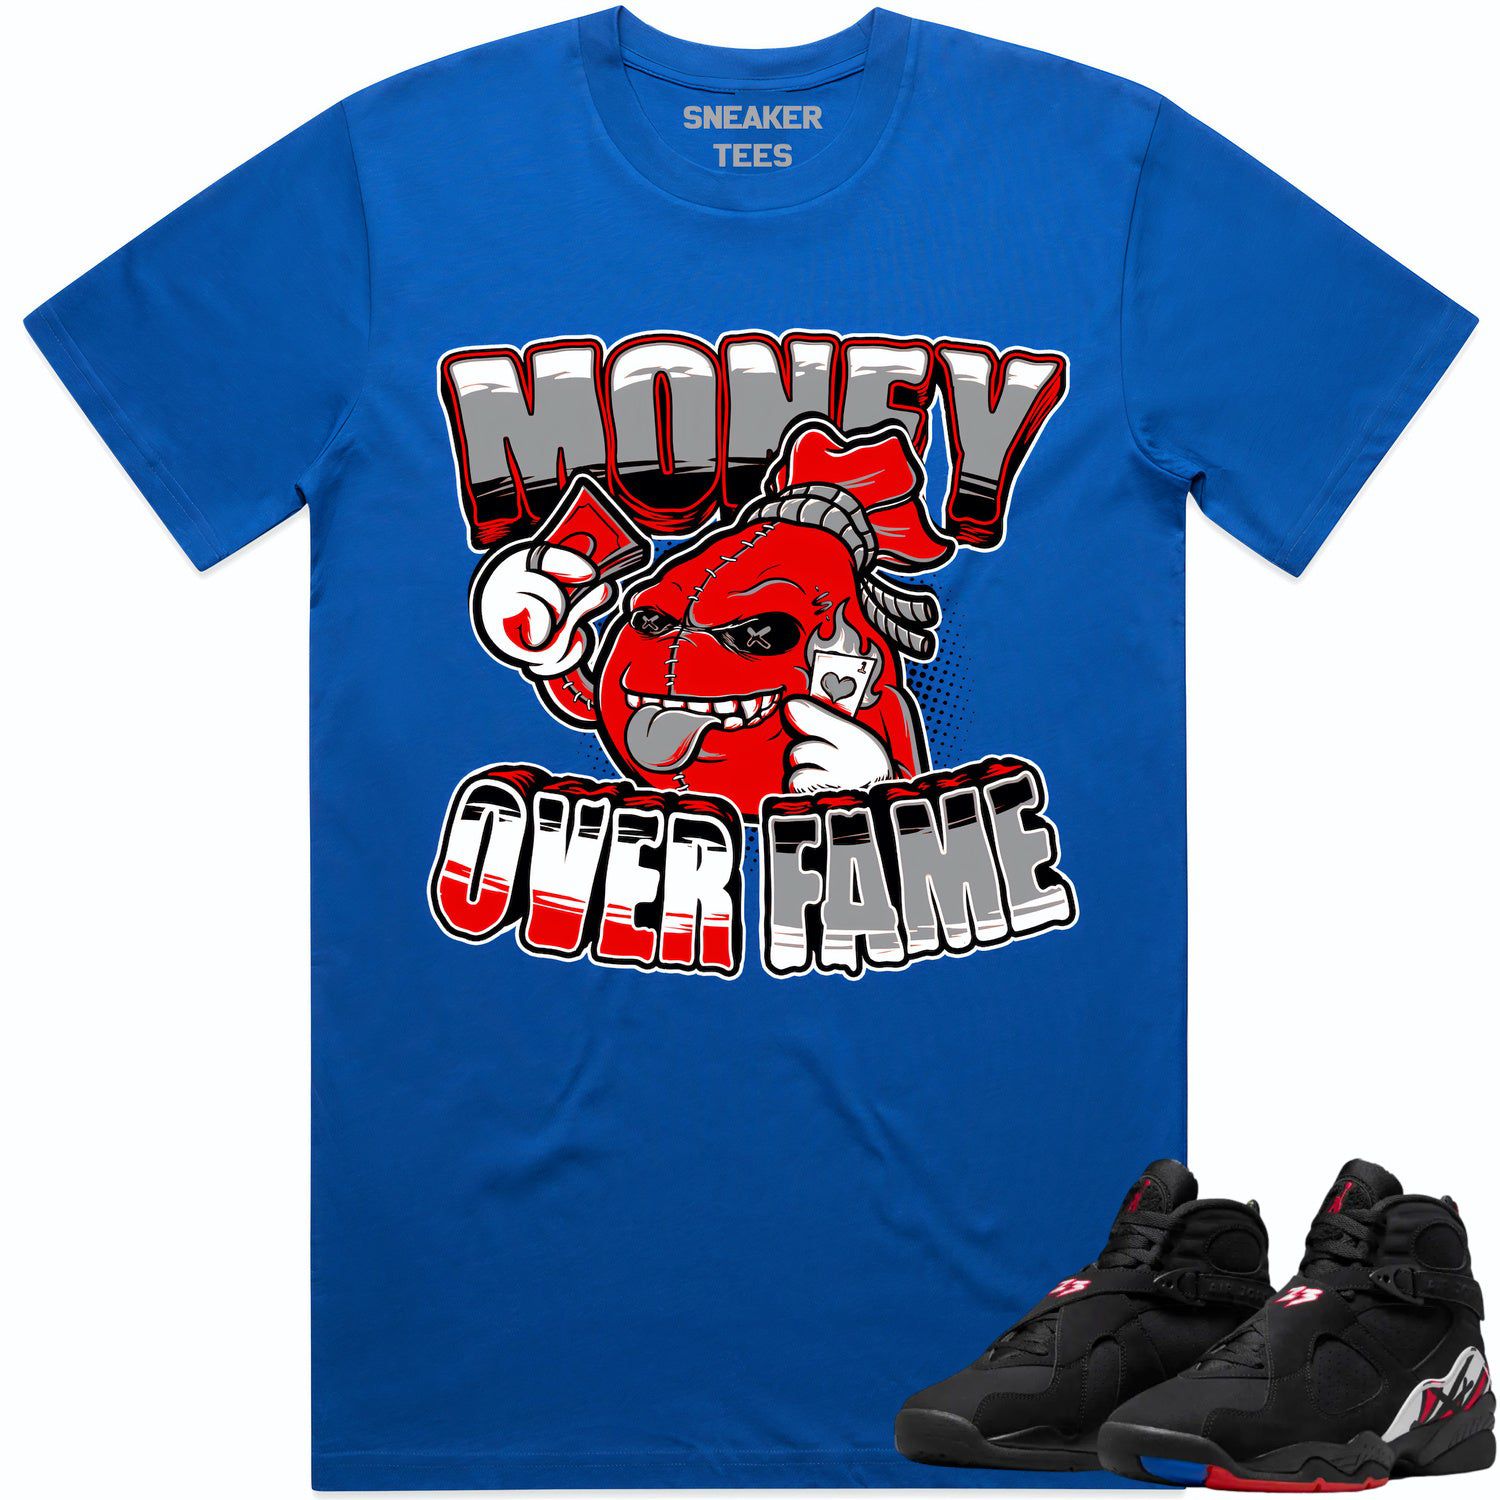 Playoff 8s Shirt - Jordan Retro 8 Playoff Sneaker Tees - Money Fame